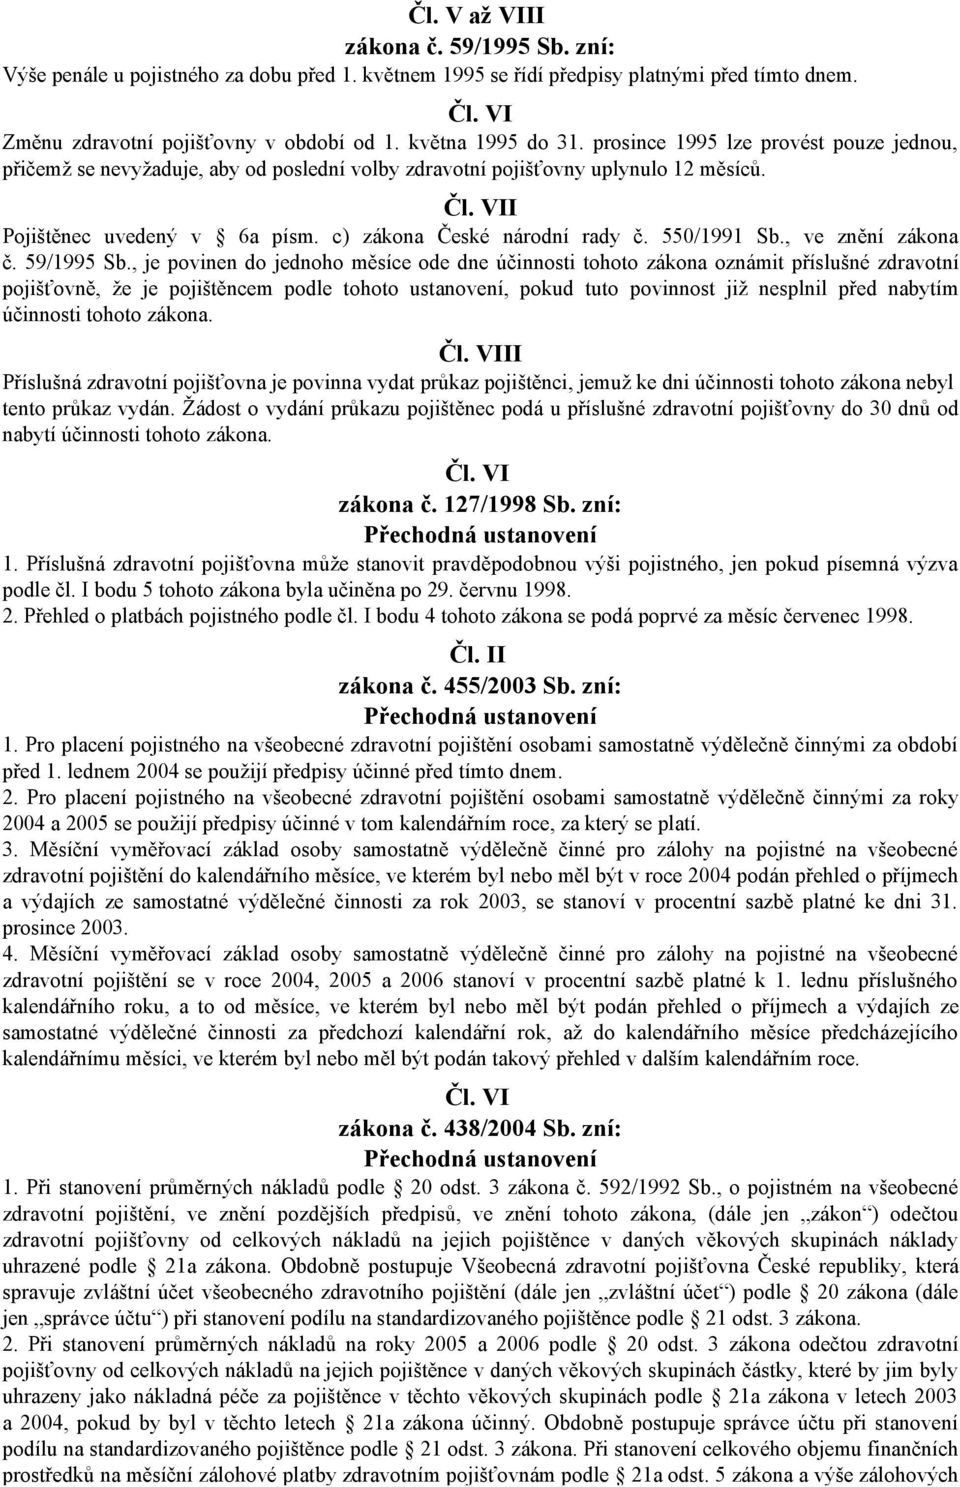 c) zákona České národní rady č. 550/1991 Sb., ve znění zákona č. 59/1995 Sb.